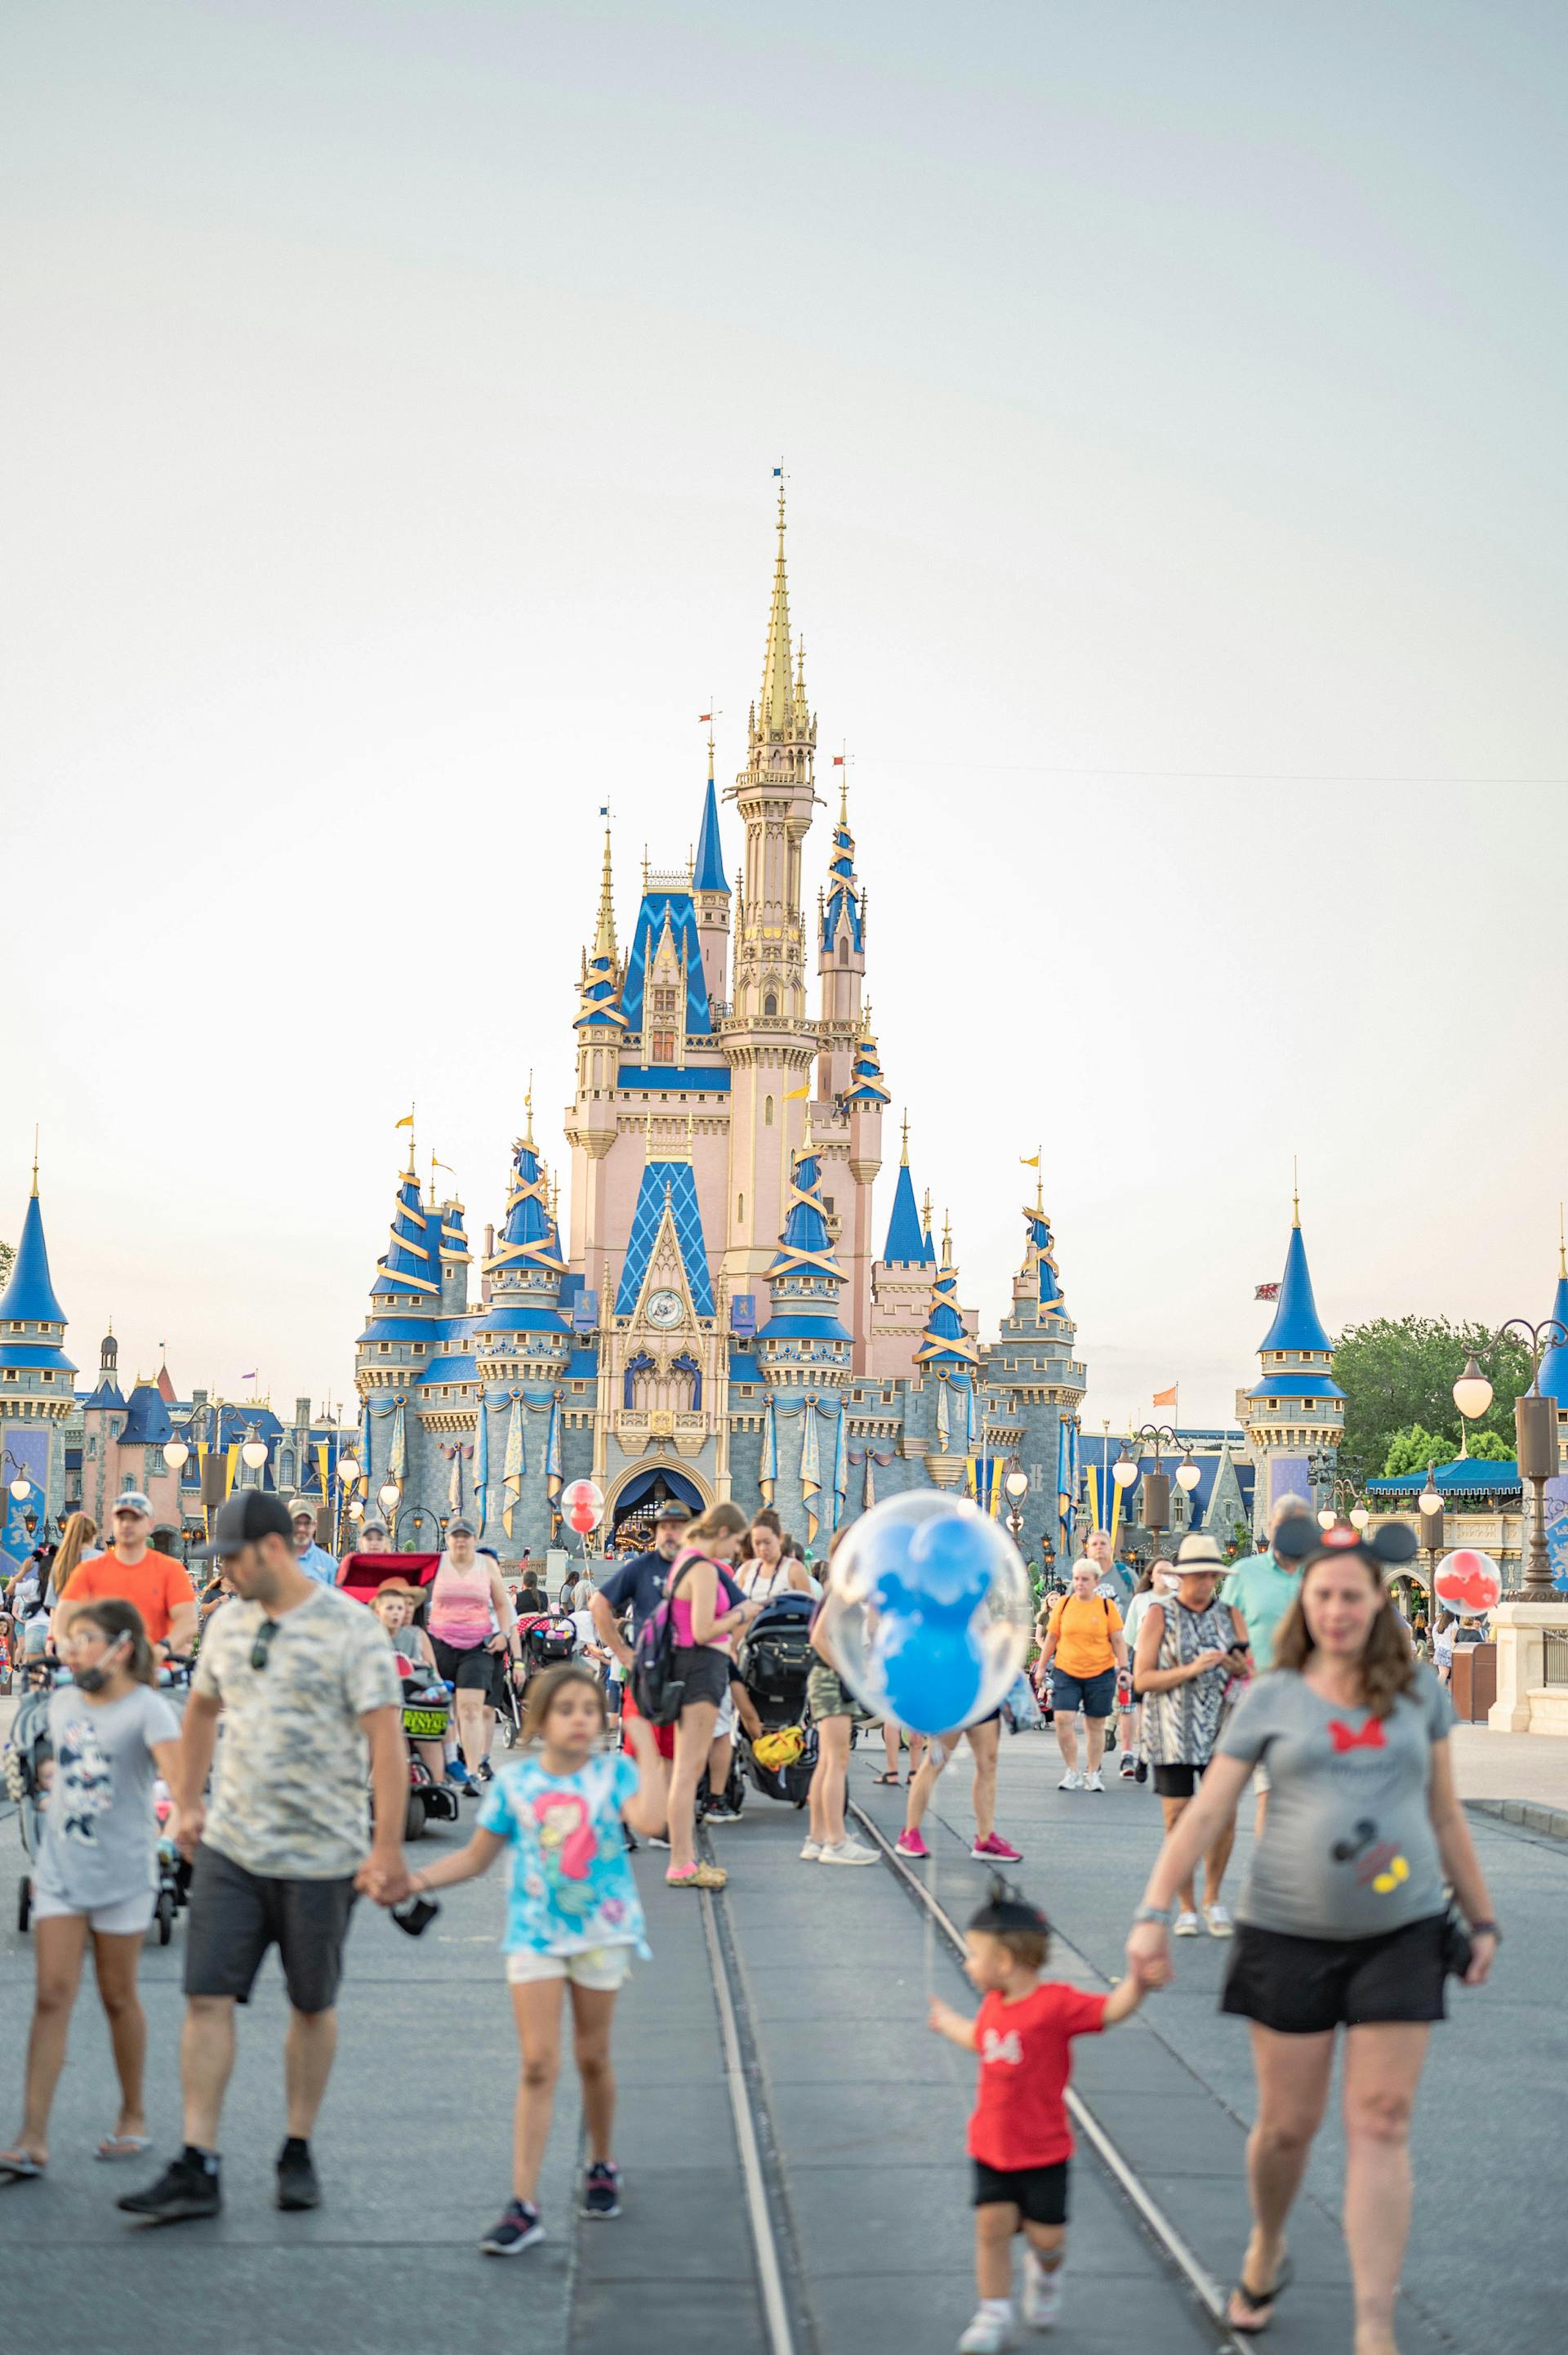 Des gens marchent près d'un château de Disney | Source : Pexels